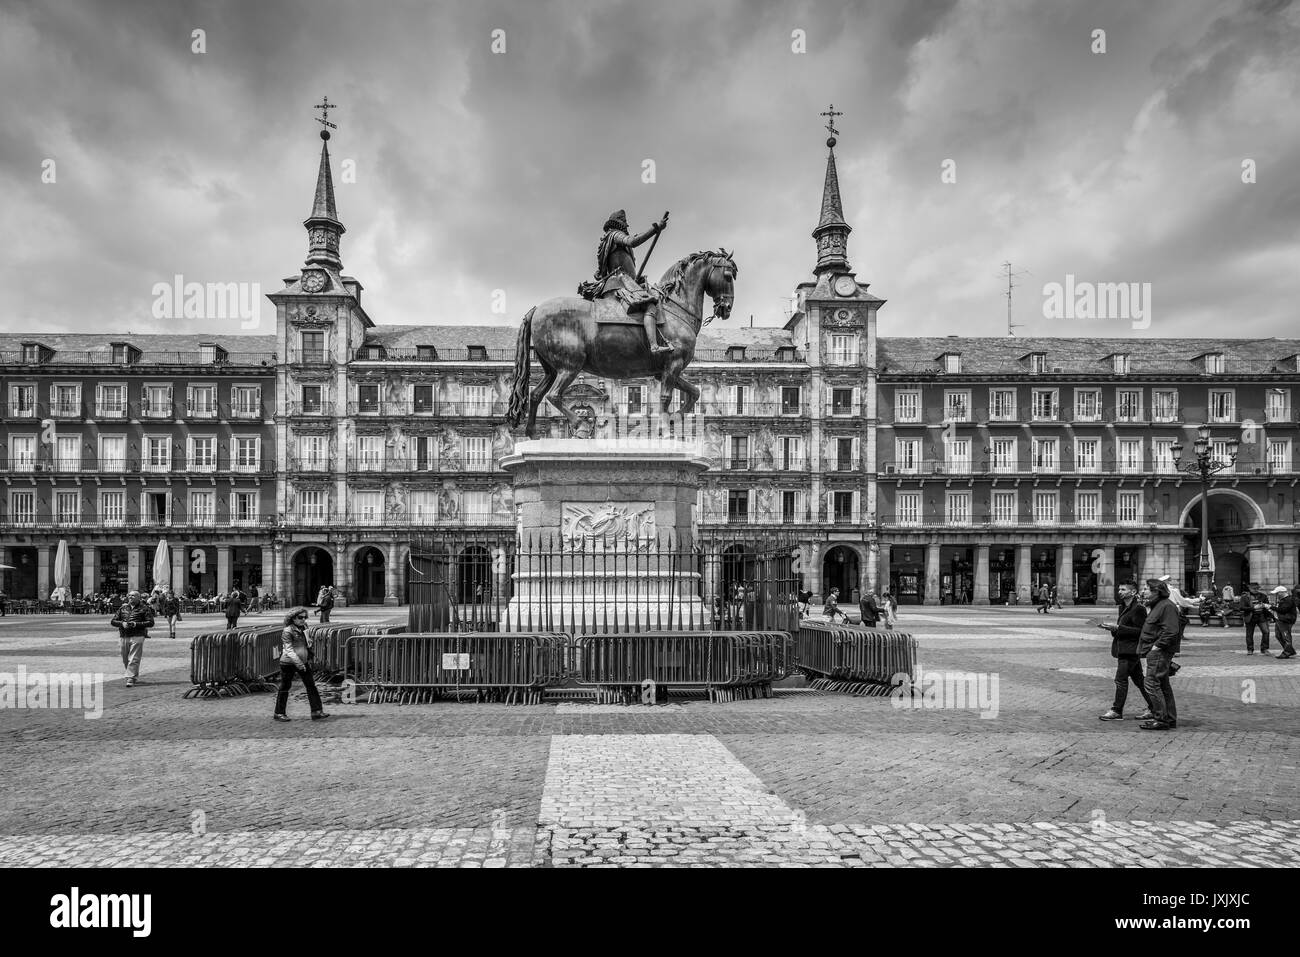 Madrid, Espagne - 22 mai 2014 : La Plaza Mayor avec statue de Philips King III de Madrid, Espagne. Le noir et blanc style rétro. Monument de l'architecture et Banque D'Images